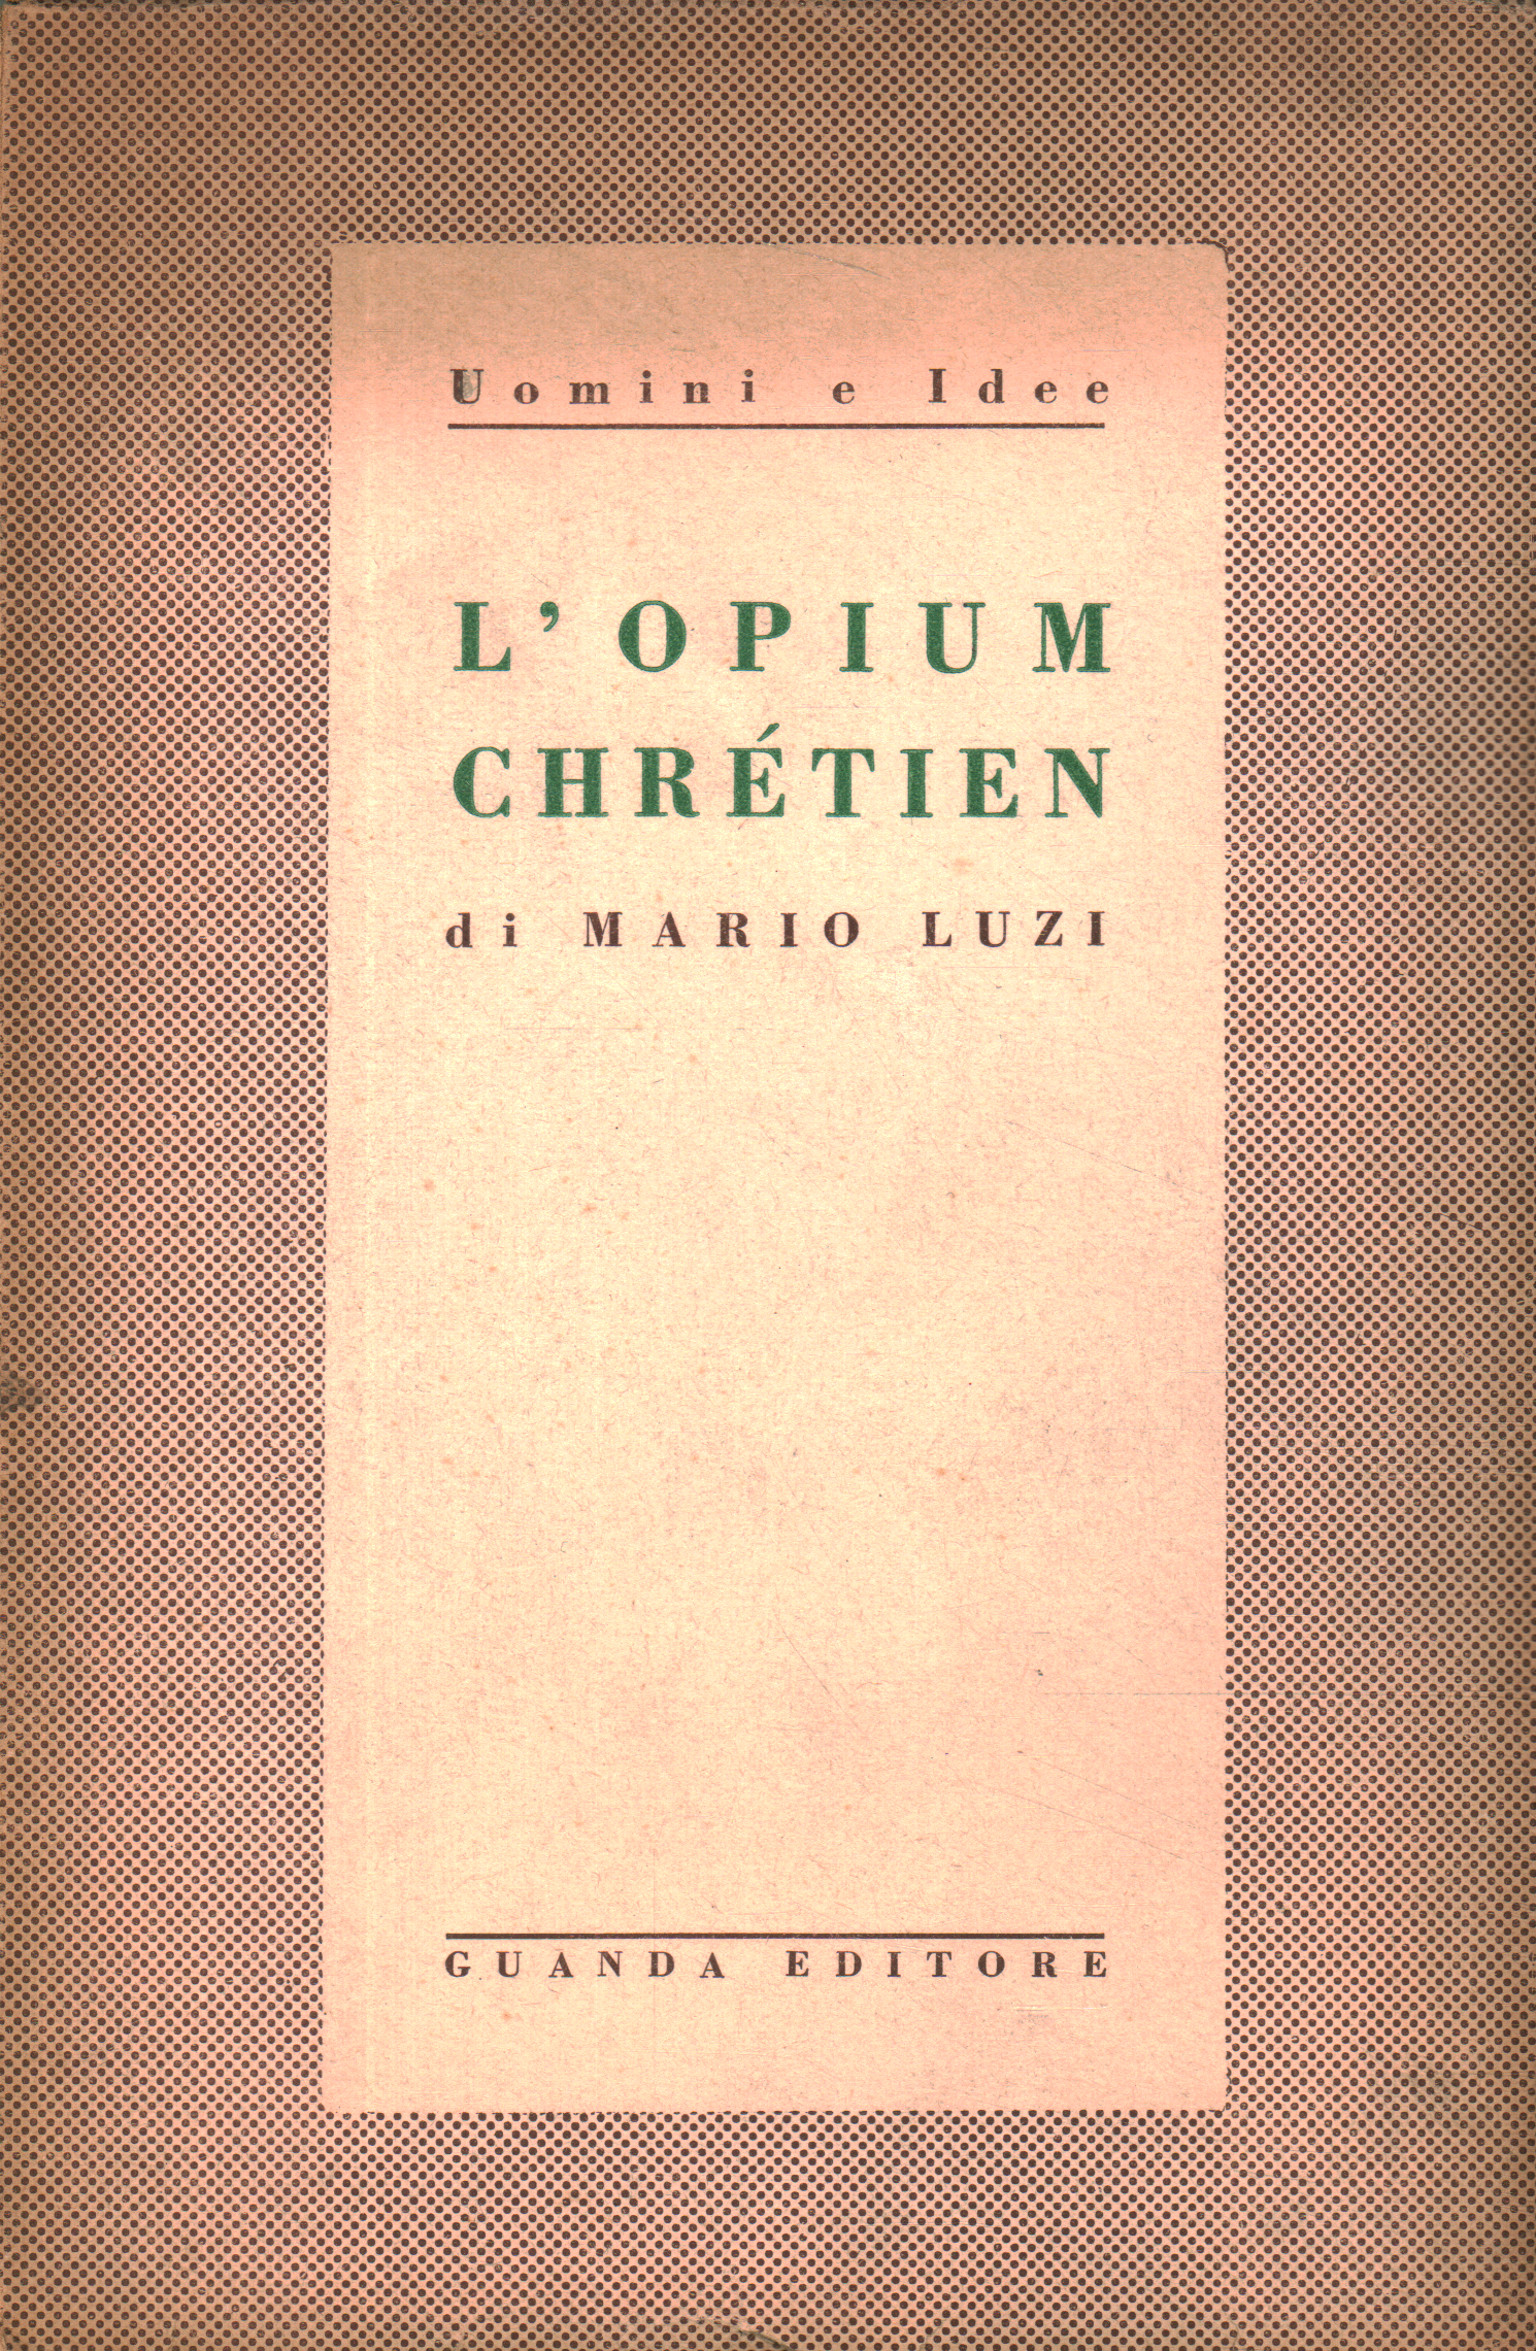 The opium chrétien